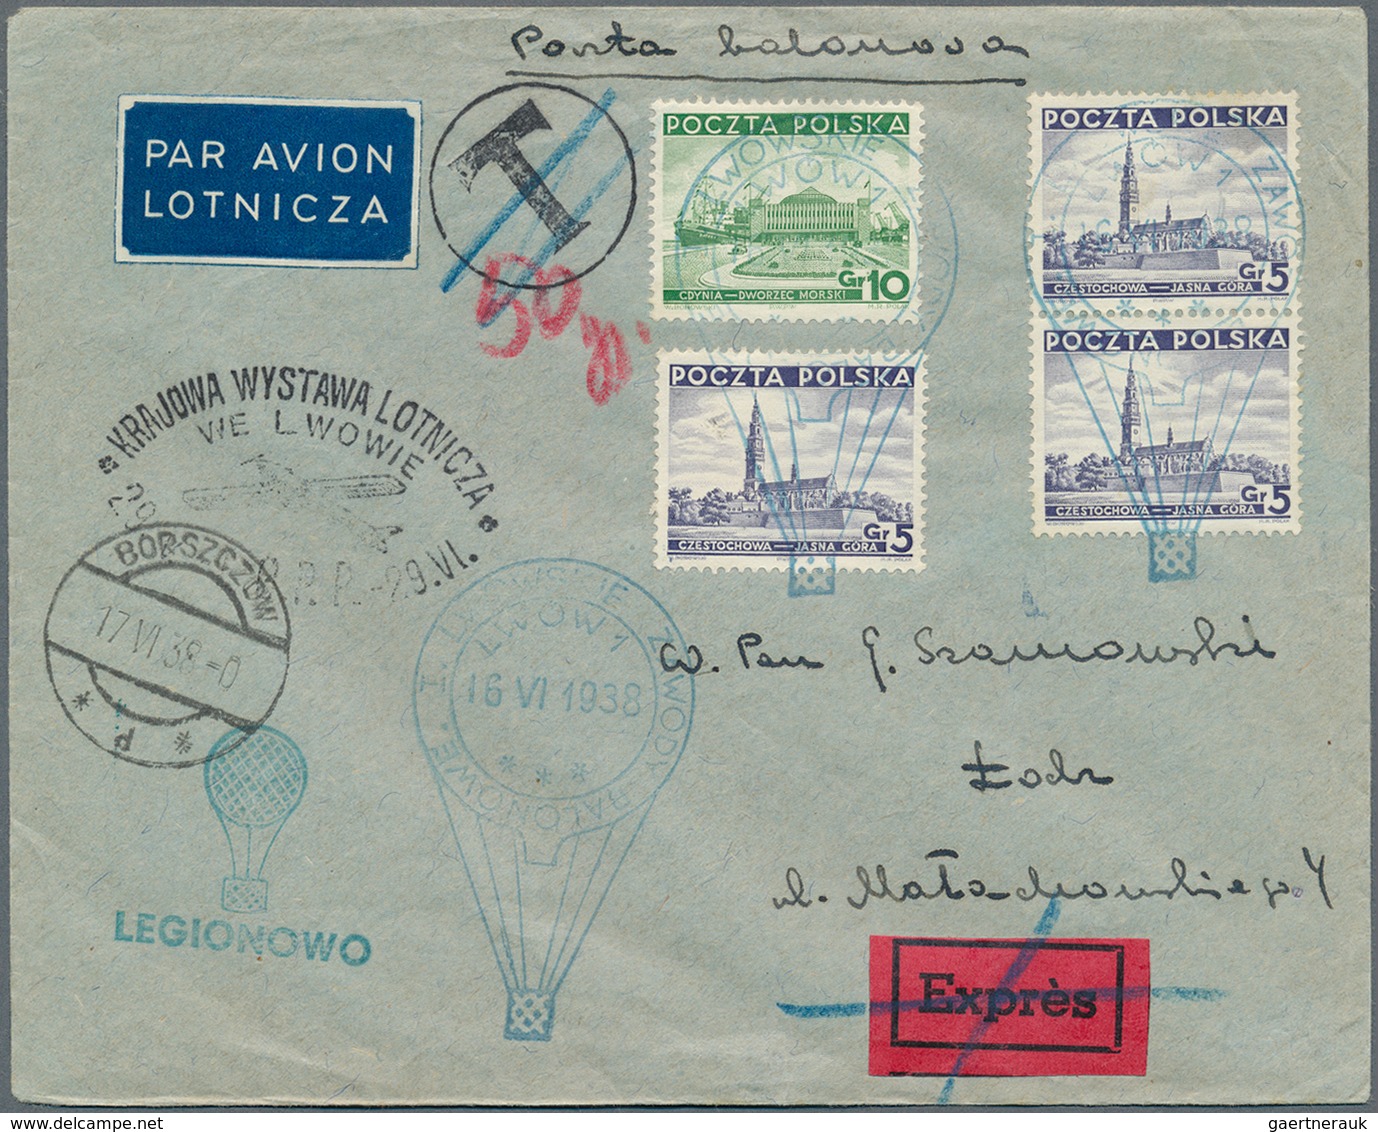 Polen - Besonderheiten: 1938, 16.VI., Poland, complete set of six balloon cards/cover: balloons "San